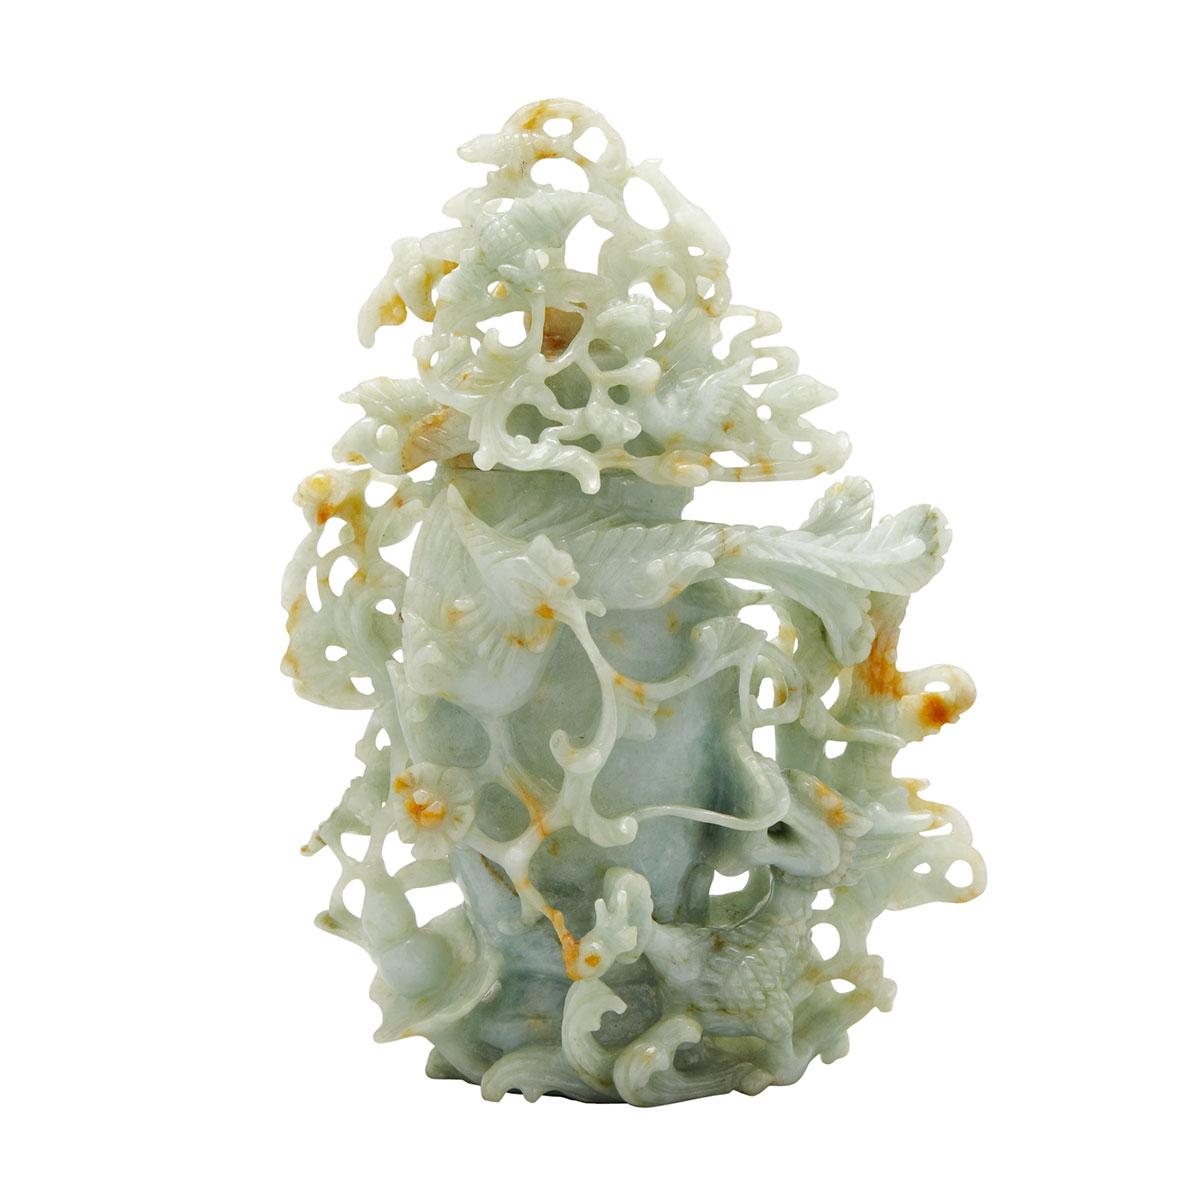 Mottled Celadon Jadeite Dragon Vase